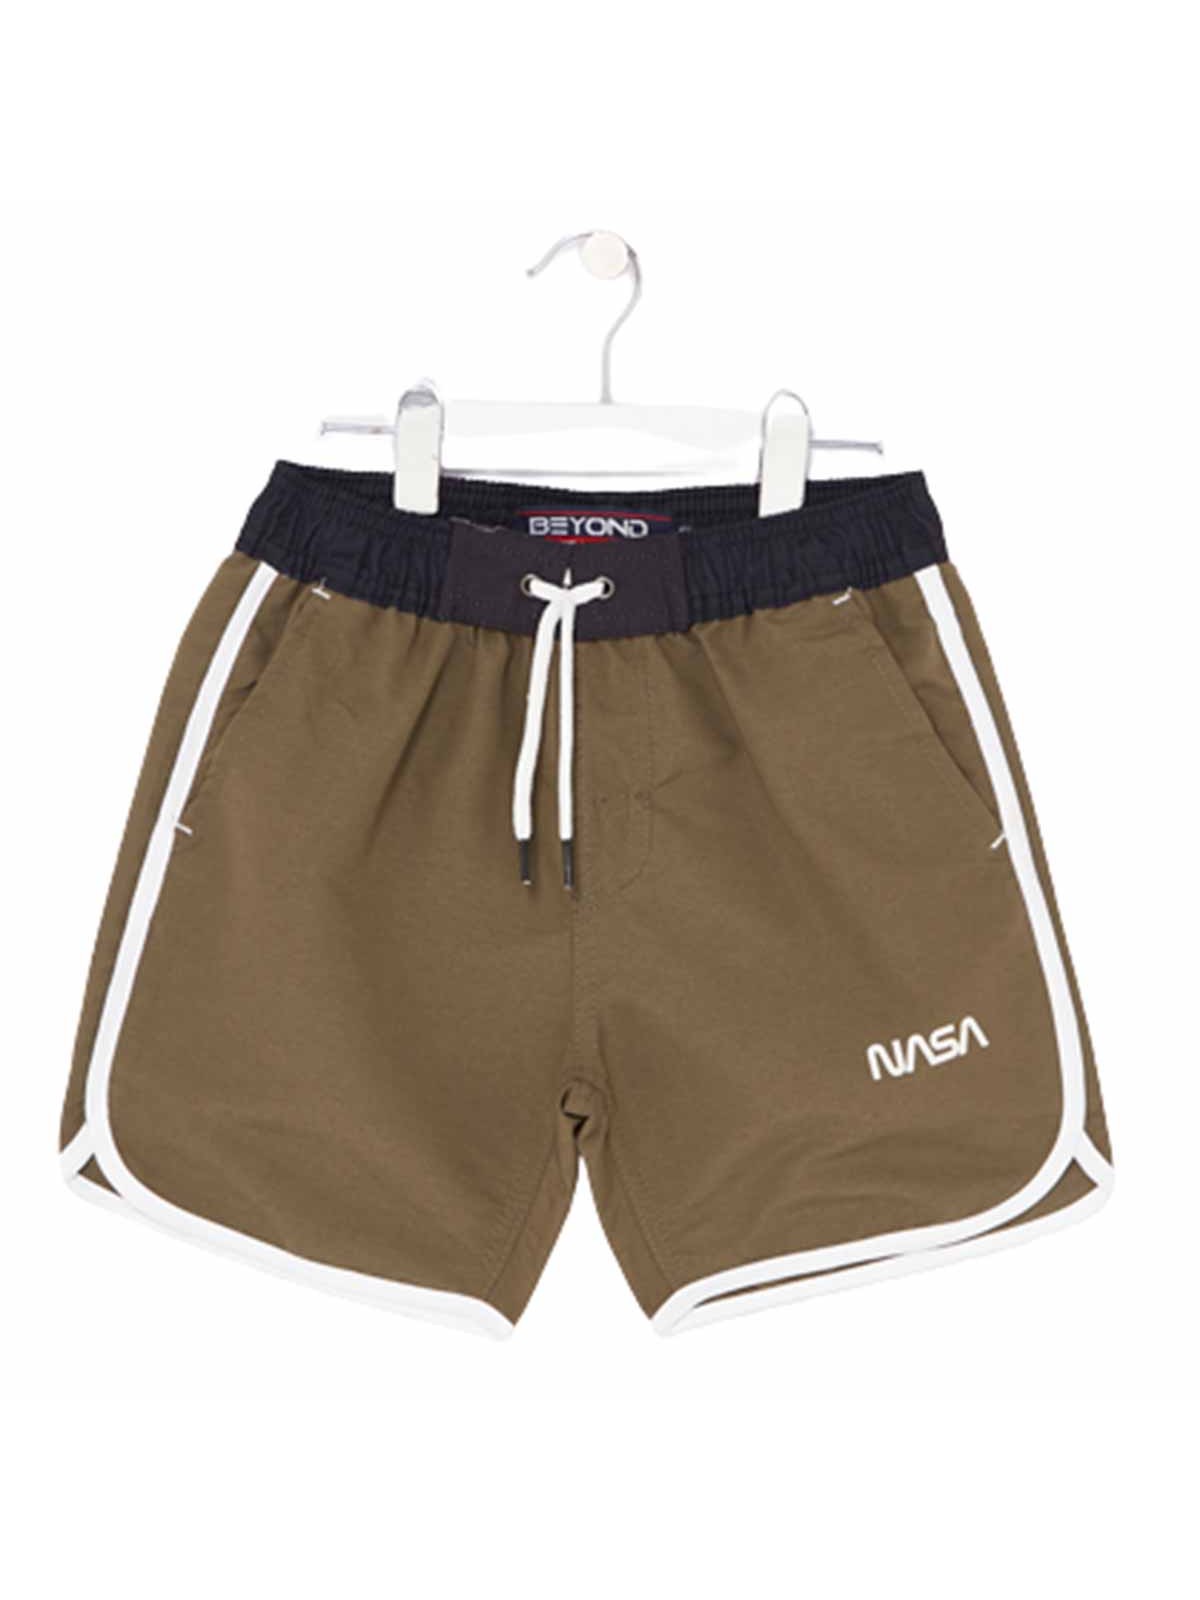 Nasa short shorts 